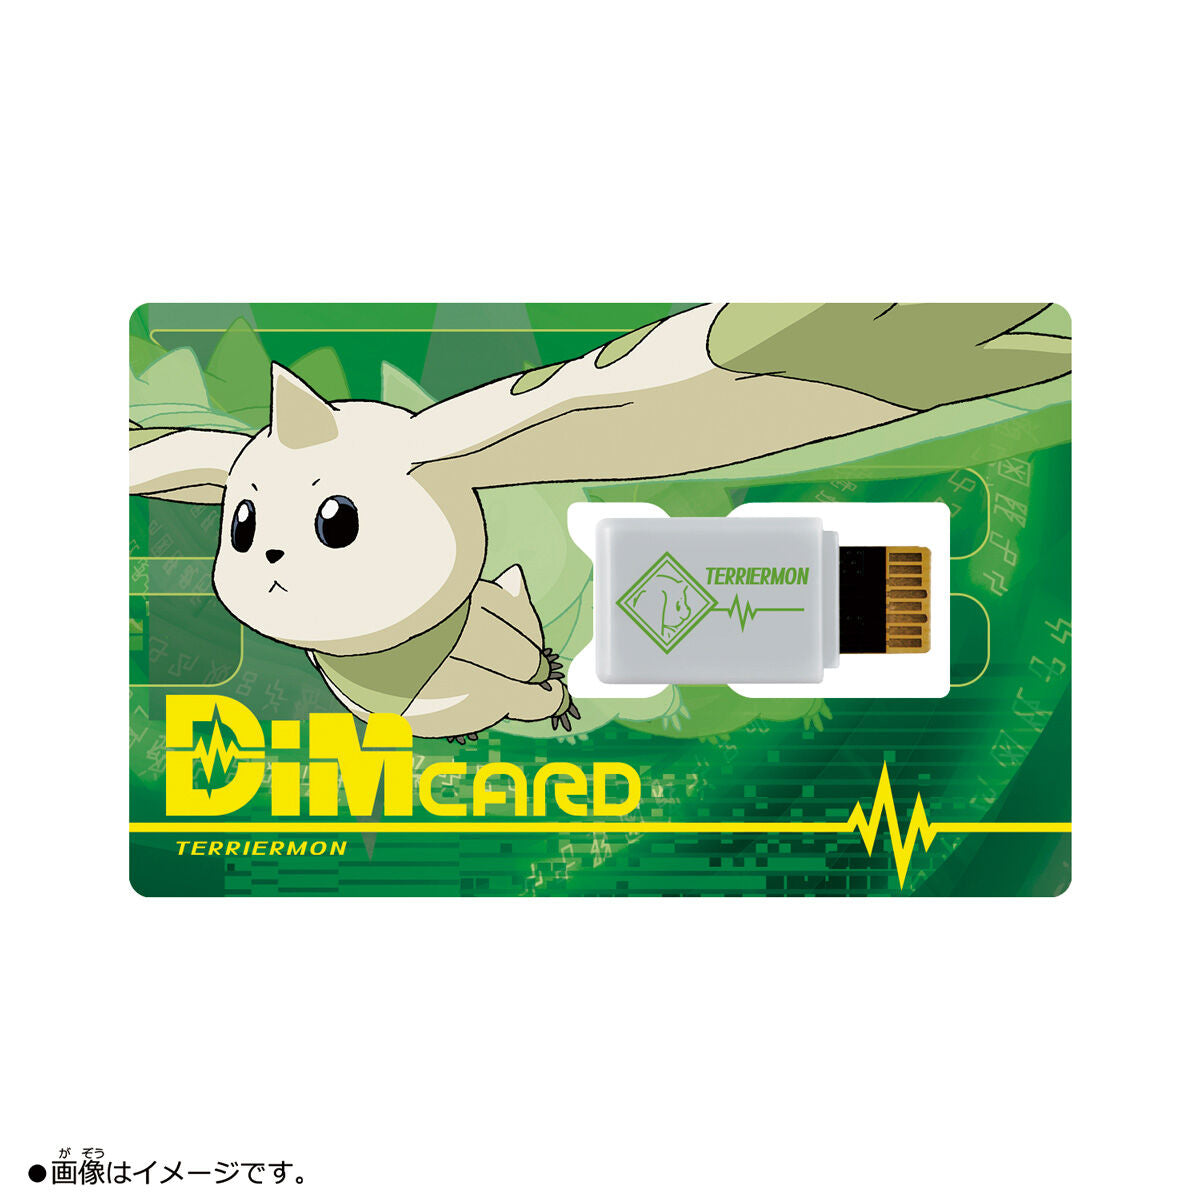 Bandai Dim Card EX2 Digimon Tamers Terriermon